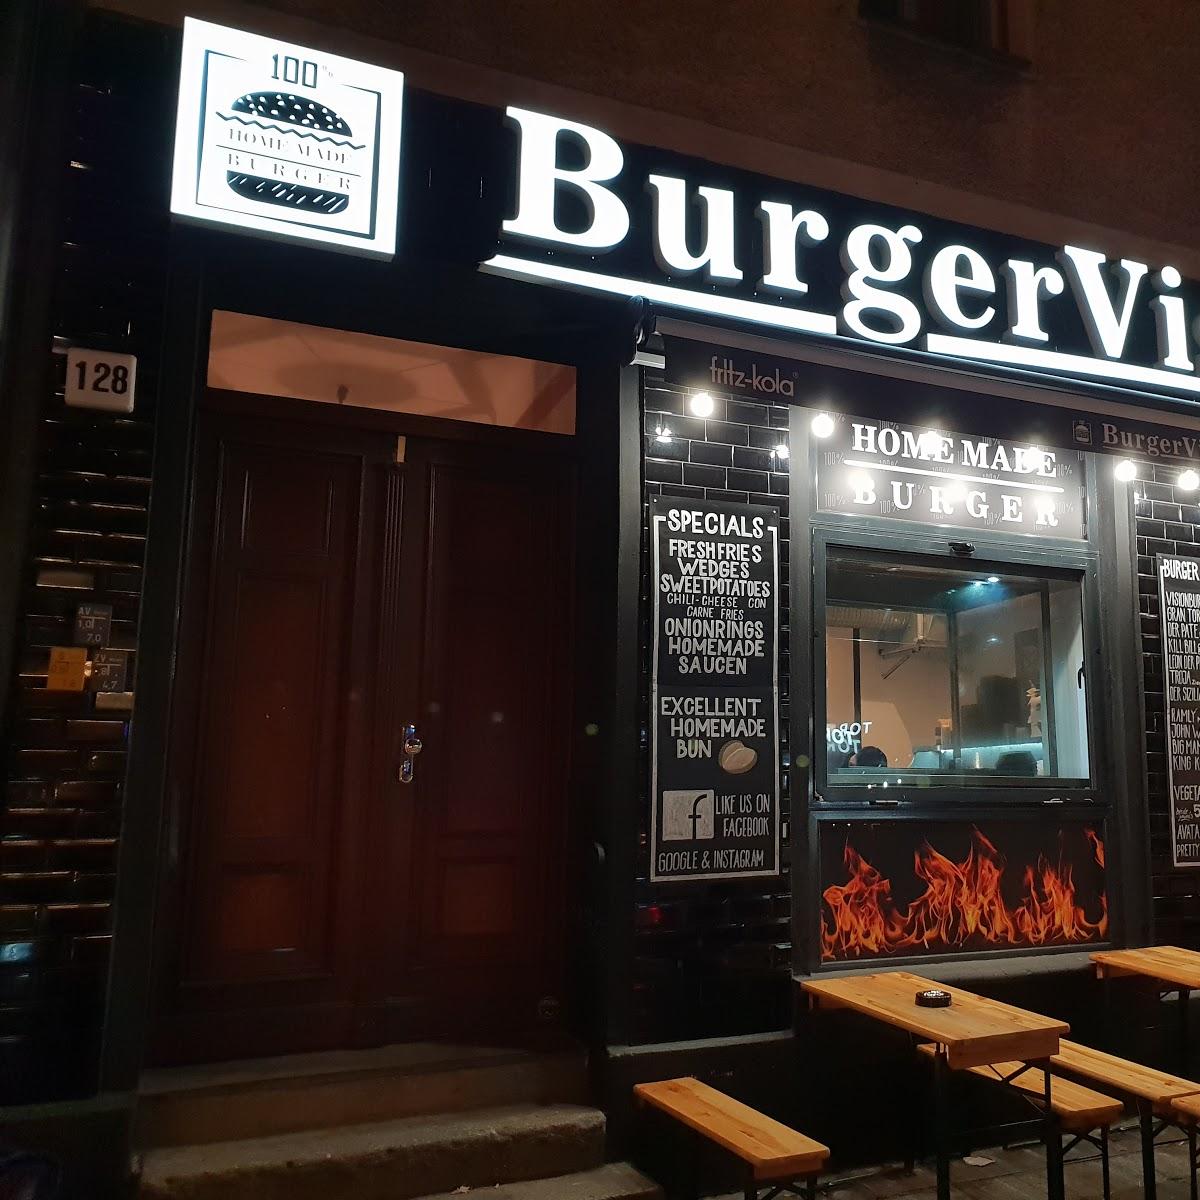 Restaurant "Burger Vision" in Berlin